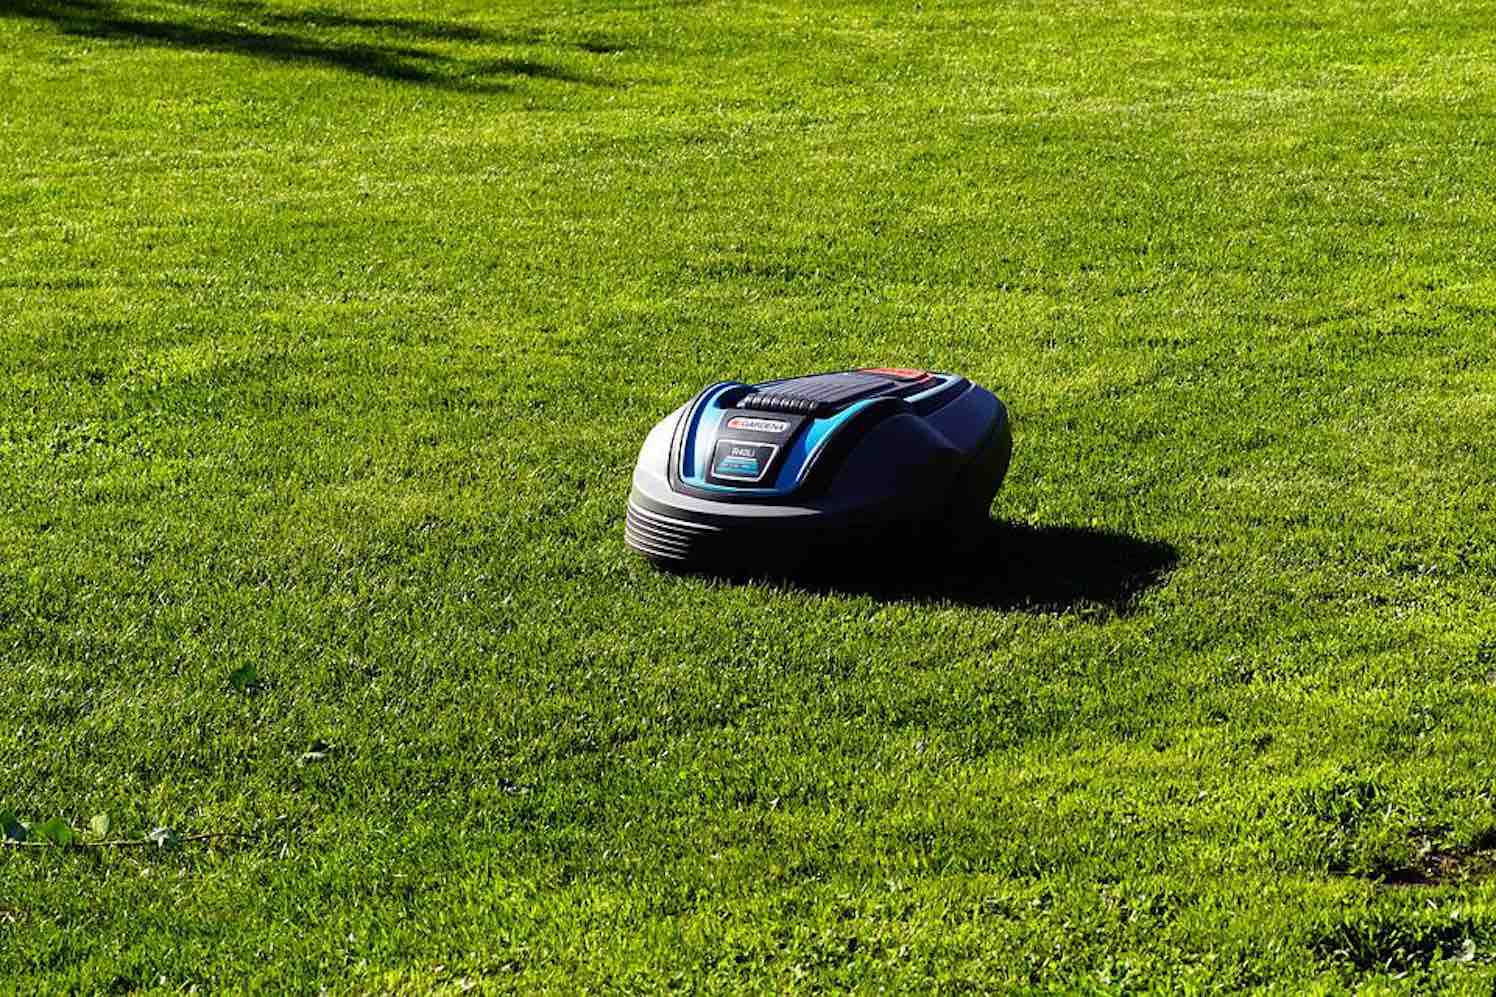 geluidloze robot grasmaaier